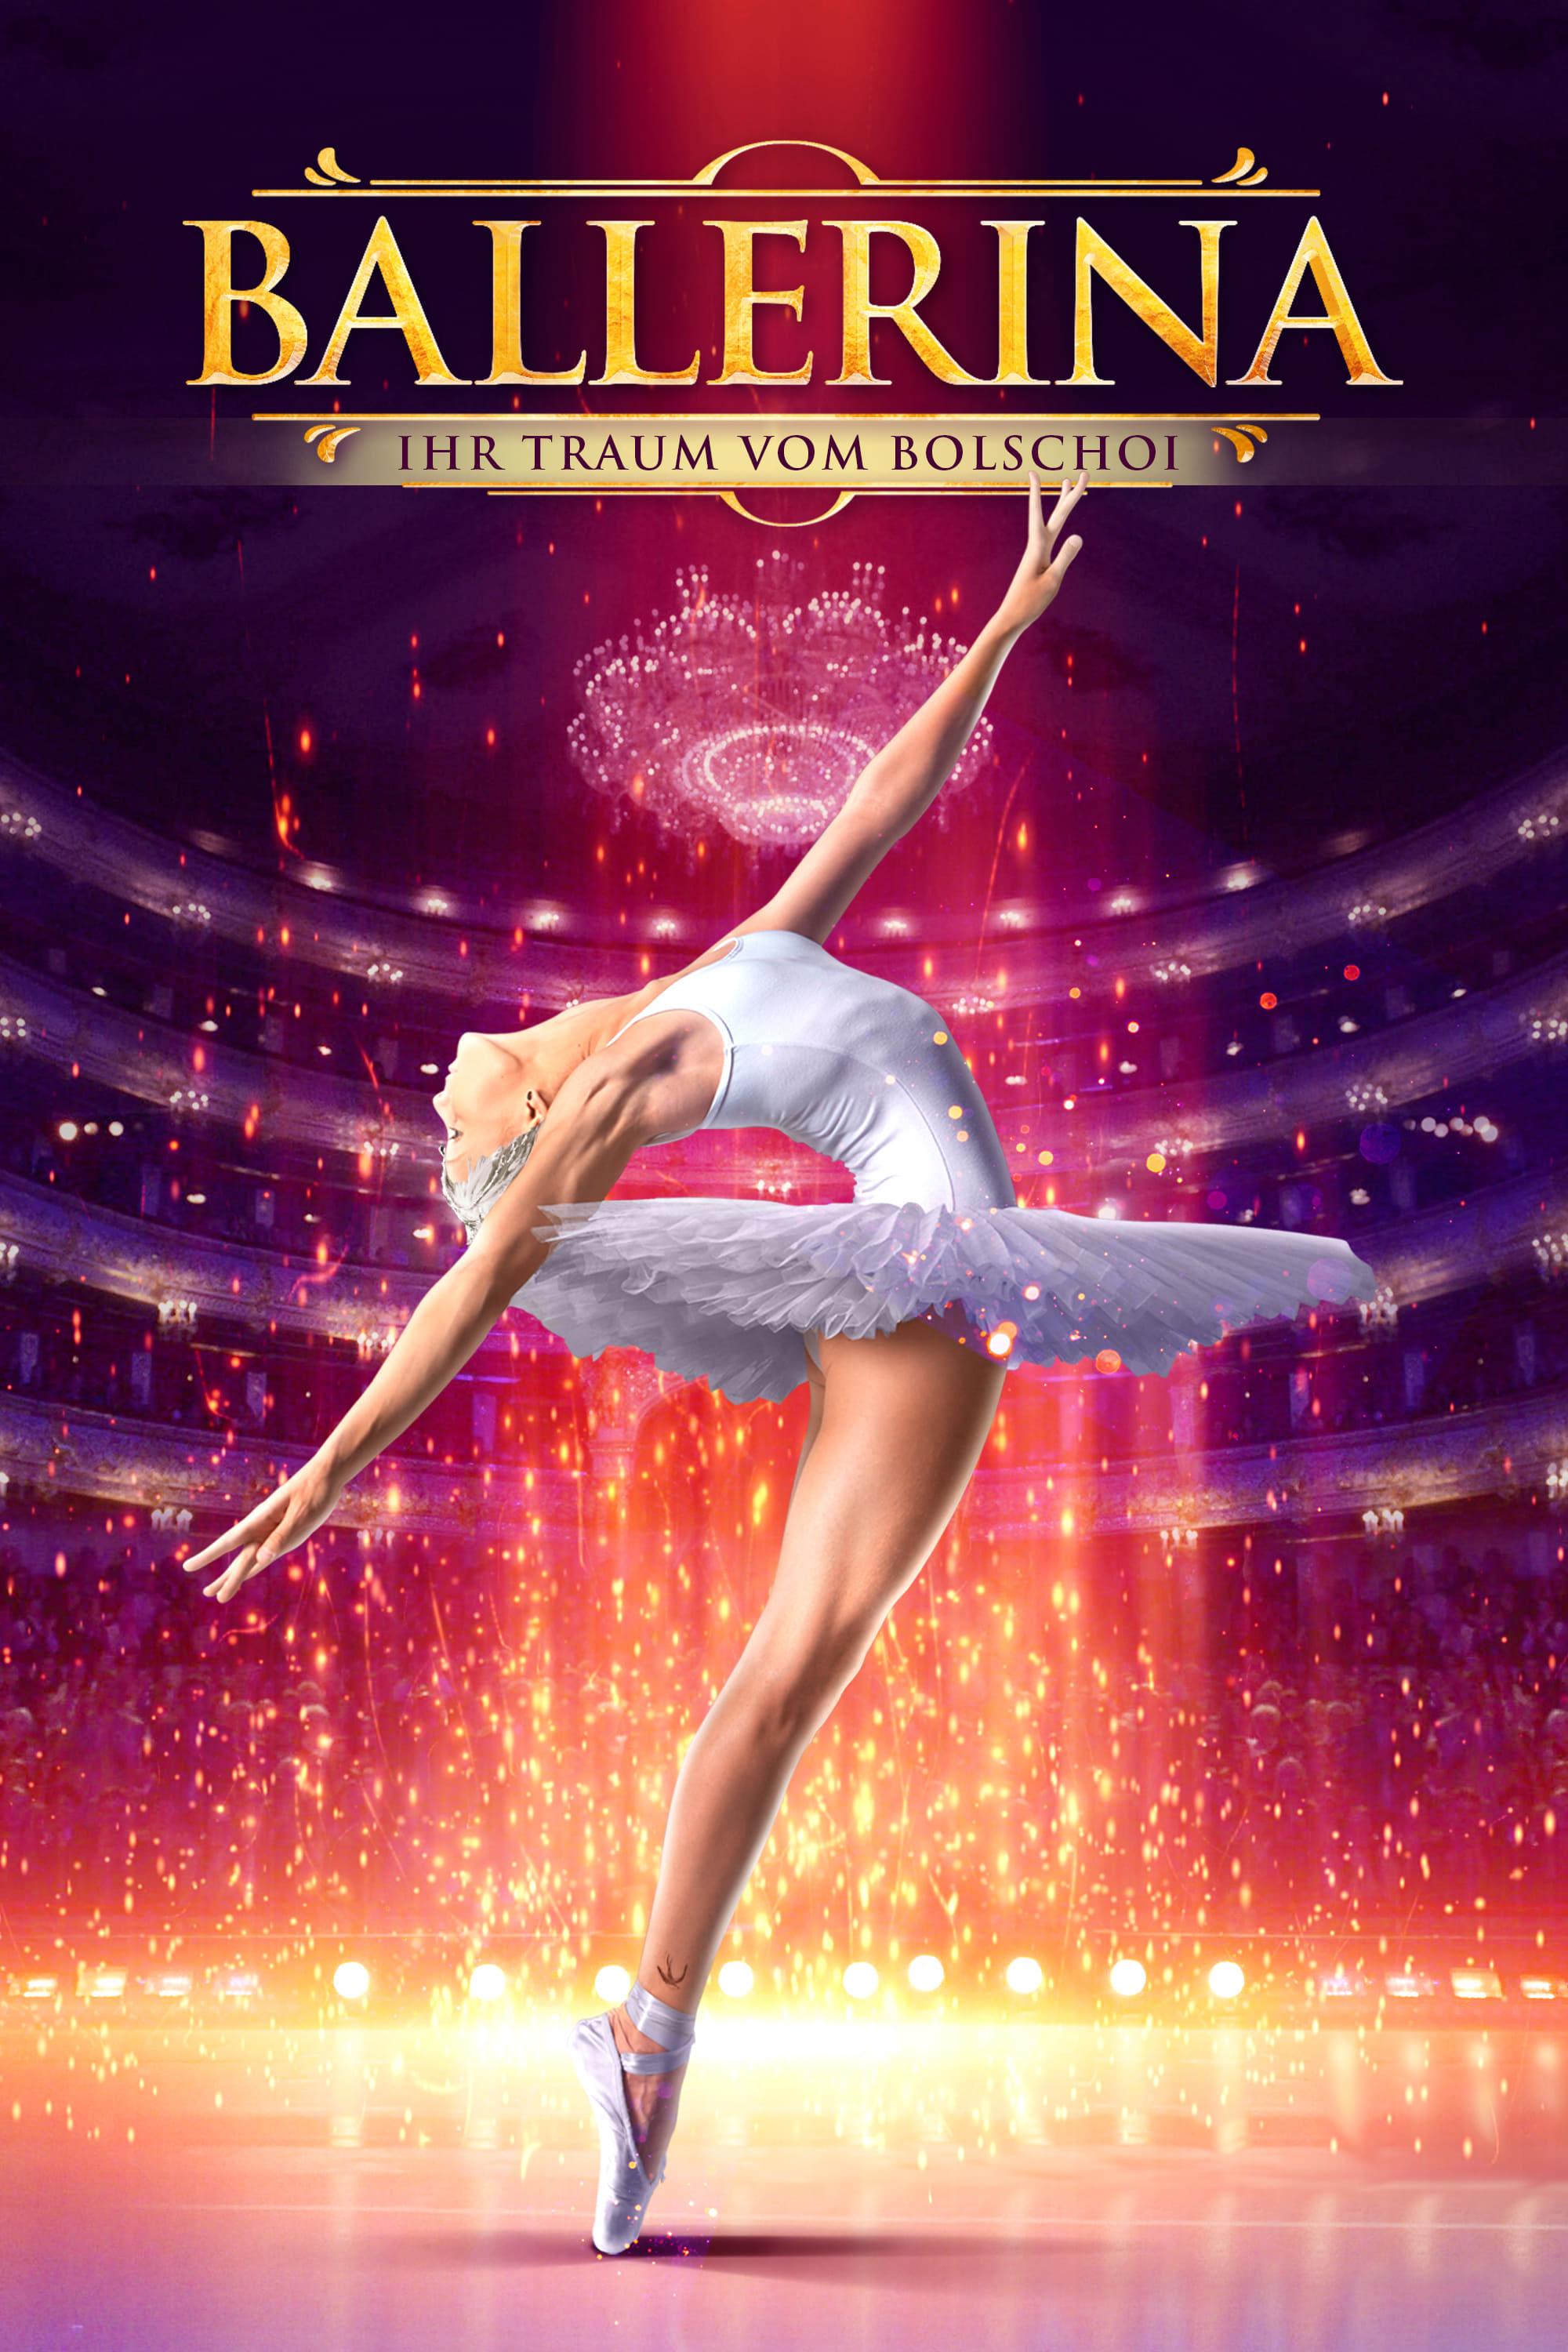 Ballerina - Ihr Traum vom Bolschoi poster